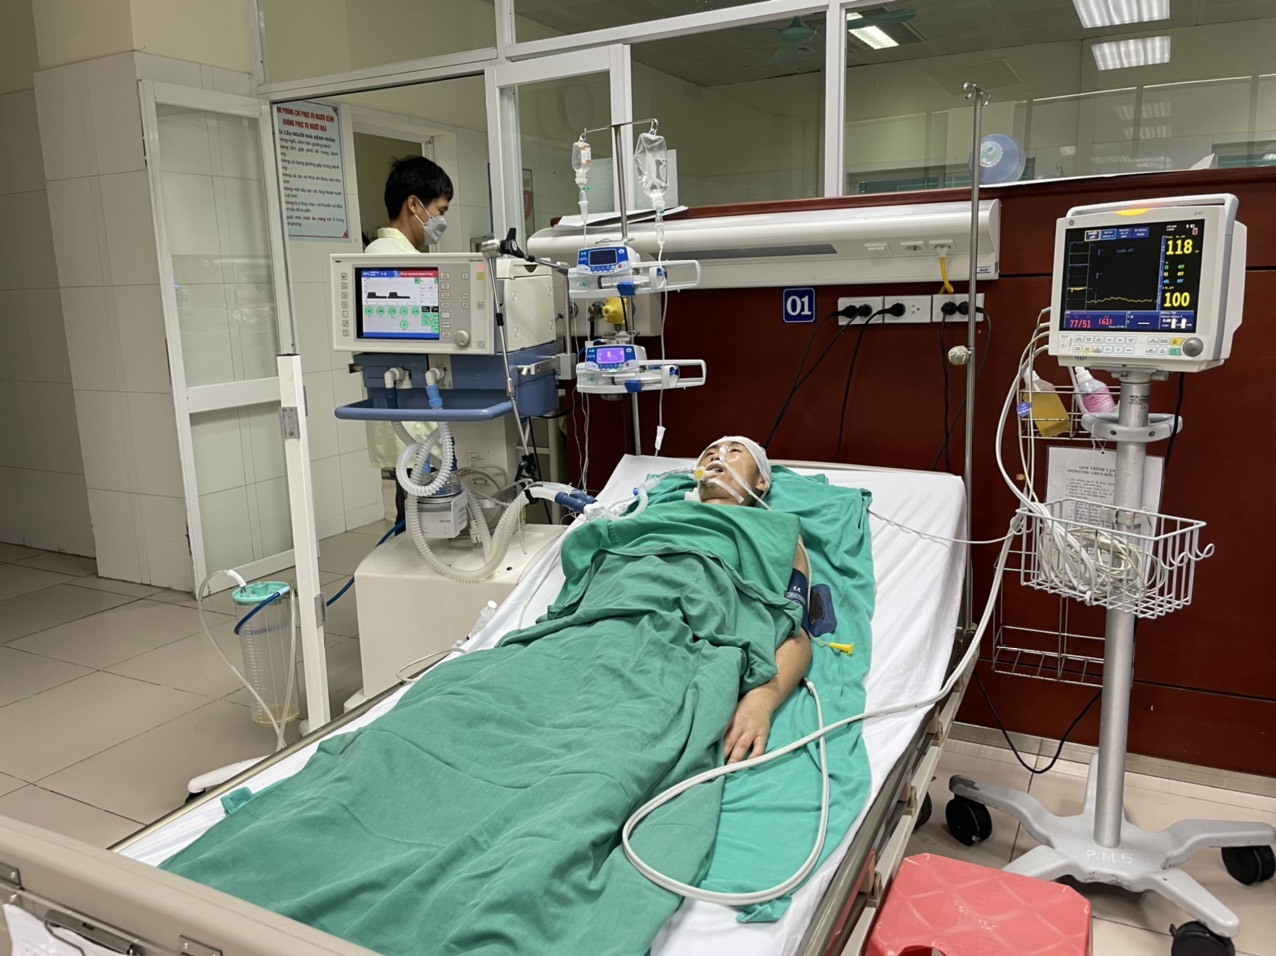 Anh Đường hiện đang cấp cứu tại Bệnh viện Đa khoa tỉnh Bắc Ninh. Ảnh: Gia đình cung cấp.